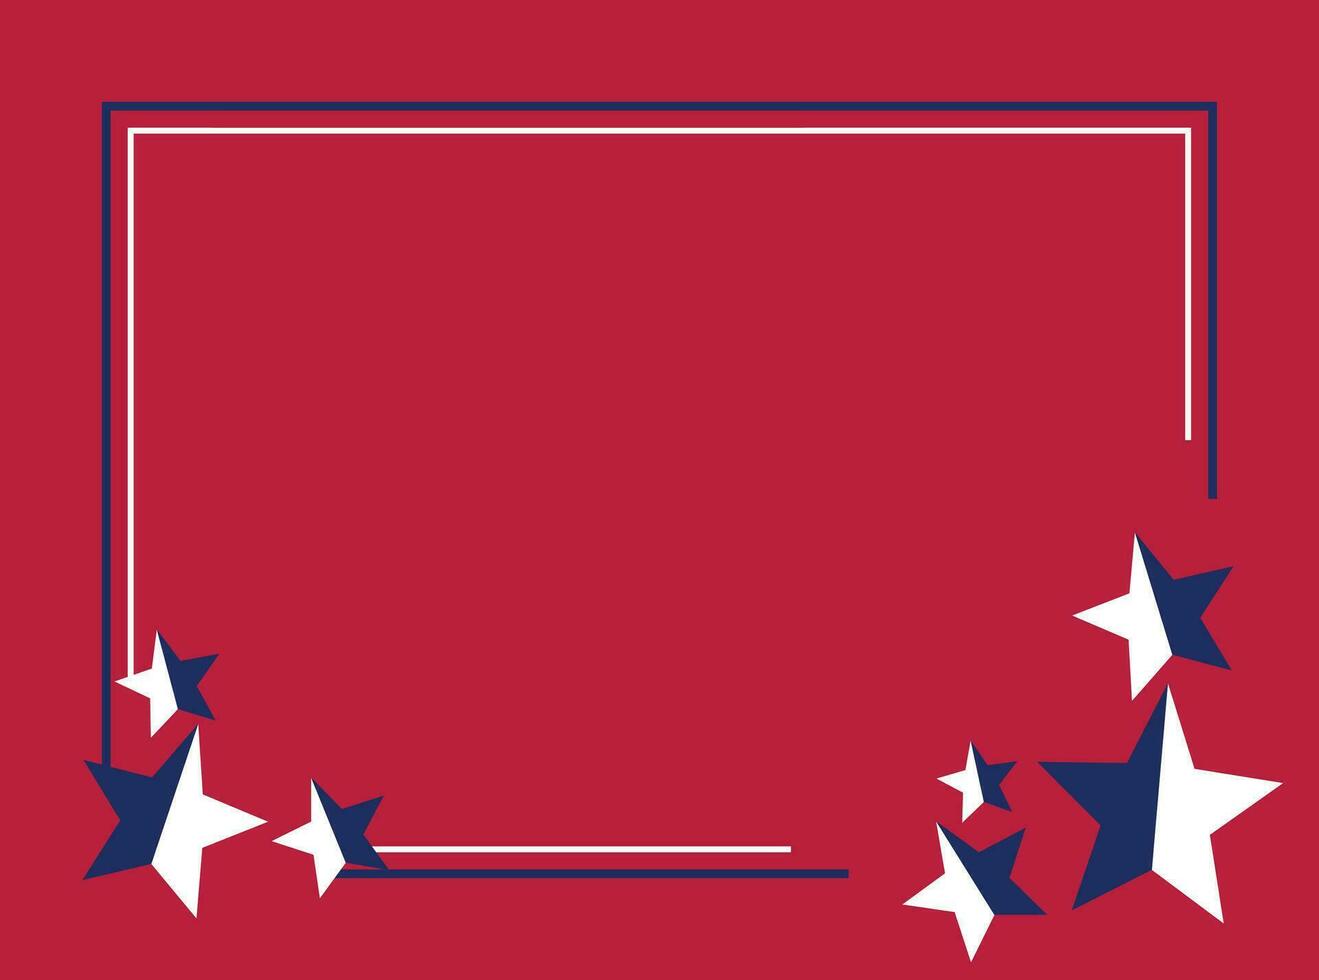 amerikanisch Urlaub Hintergrund im Blau, Weiss, rot Farben mit Star Symbol. Design zum Banner, Gruß Karte, Einladung, Sozial Medien, Netz. vektor